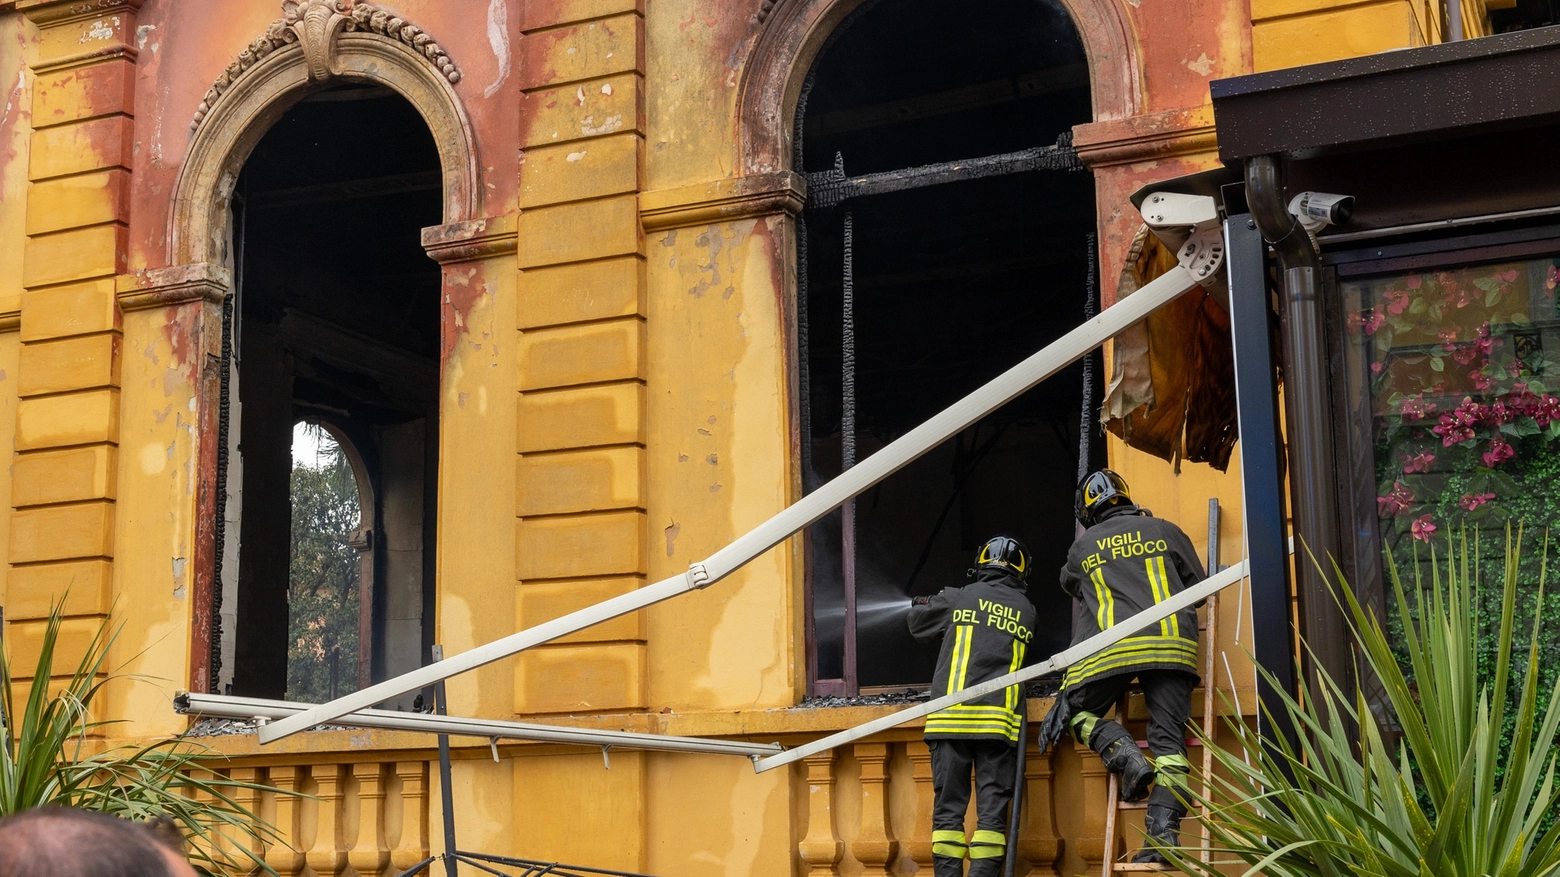 L’incendio è divampato all’interno della storica struttura nel centro della movida cittadina. Ingenti danni nel locale Principe. Ipotesi dolosa